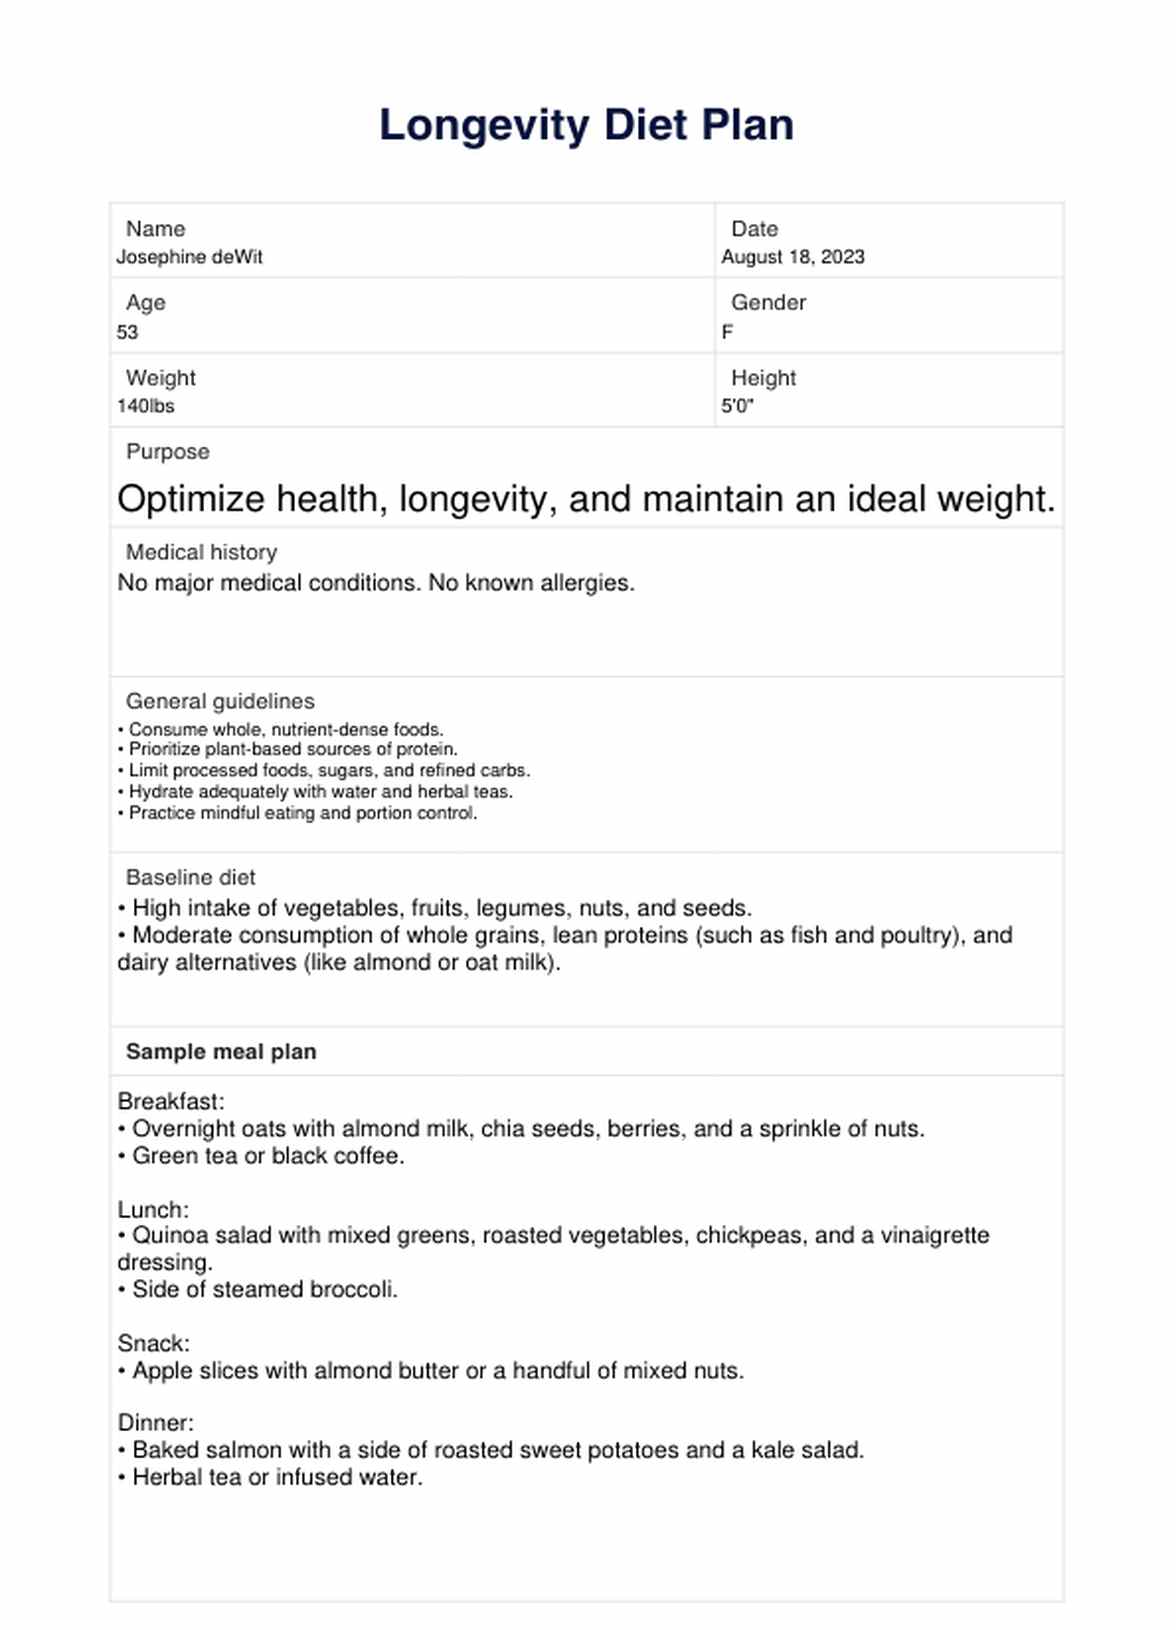 Longevity Diet PDF Example